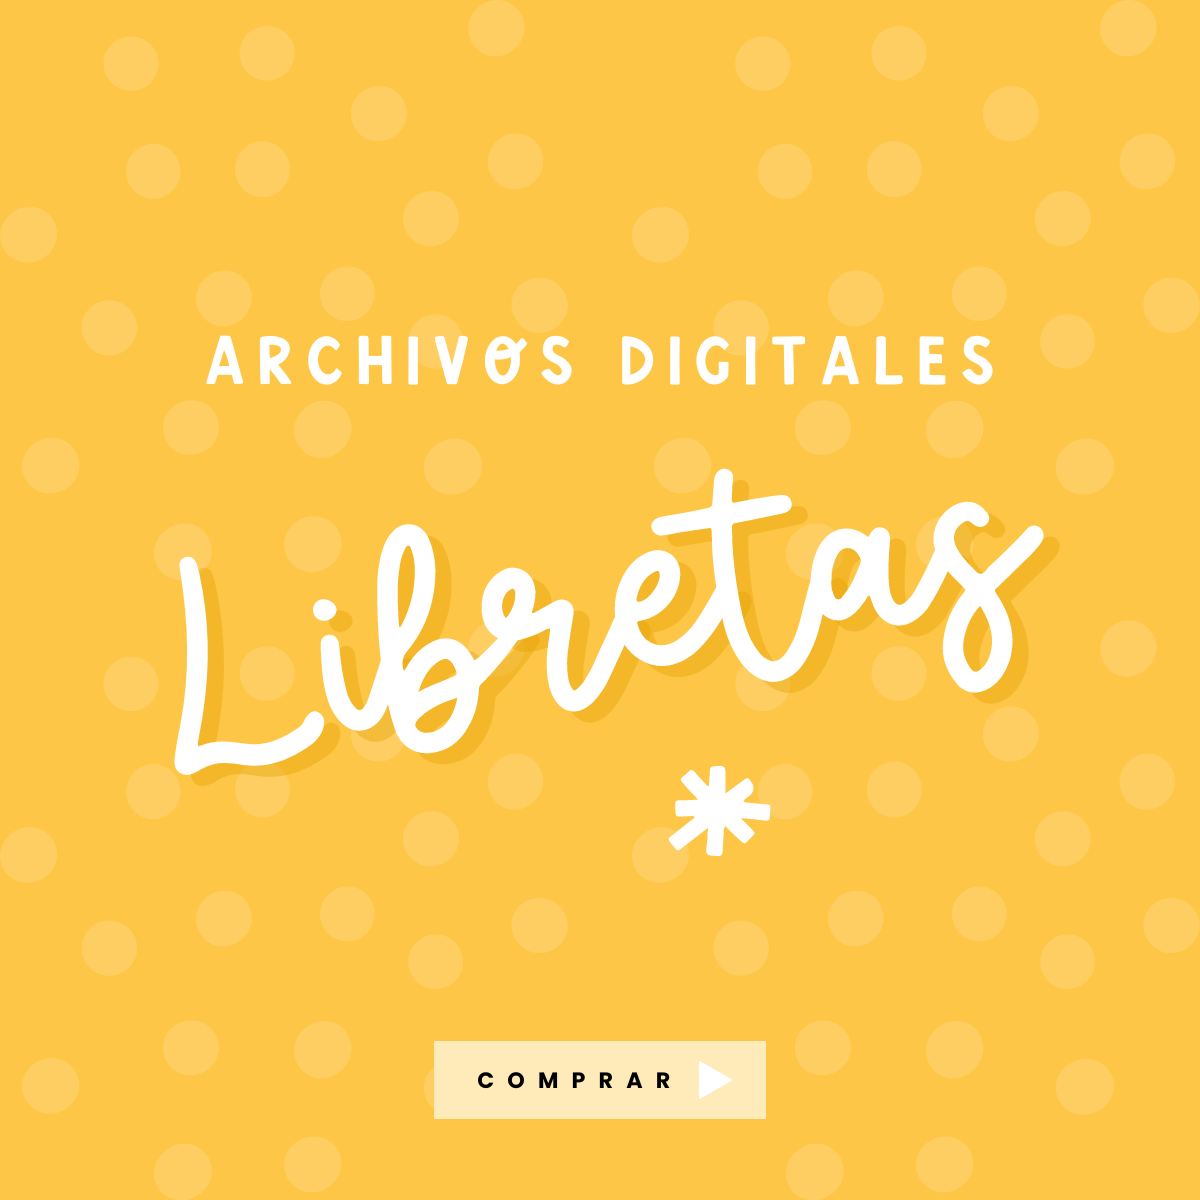 Archivos digitales Libretas